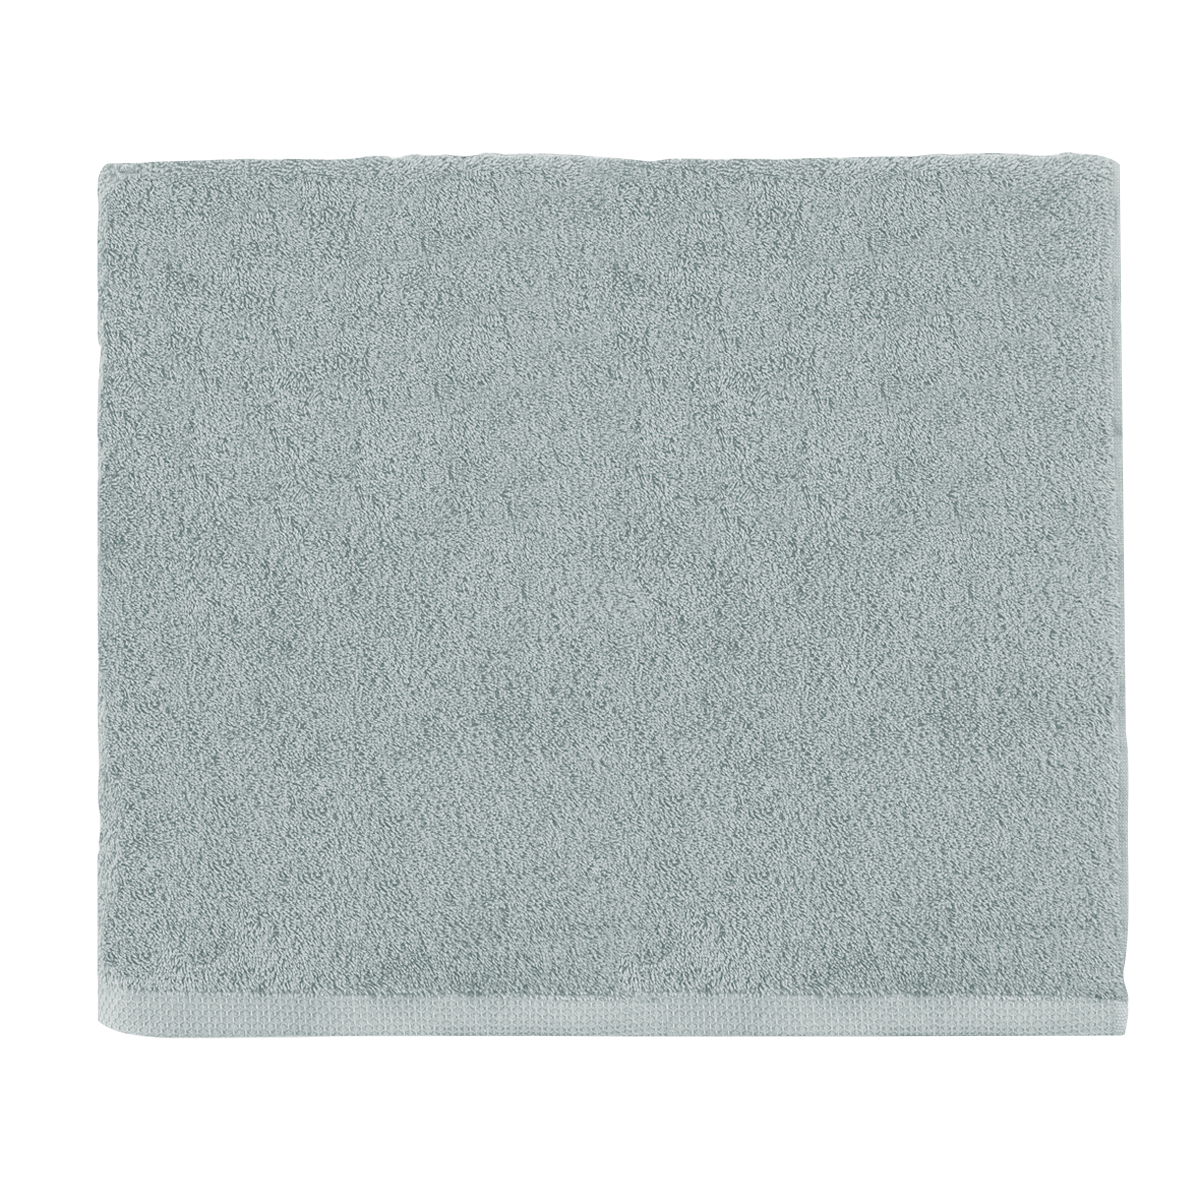 Serviette invité unie en coton gris Plume 30x50